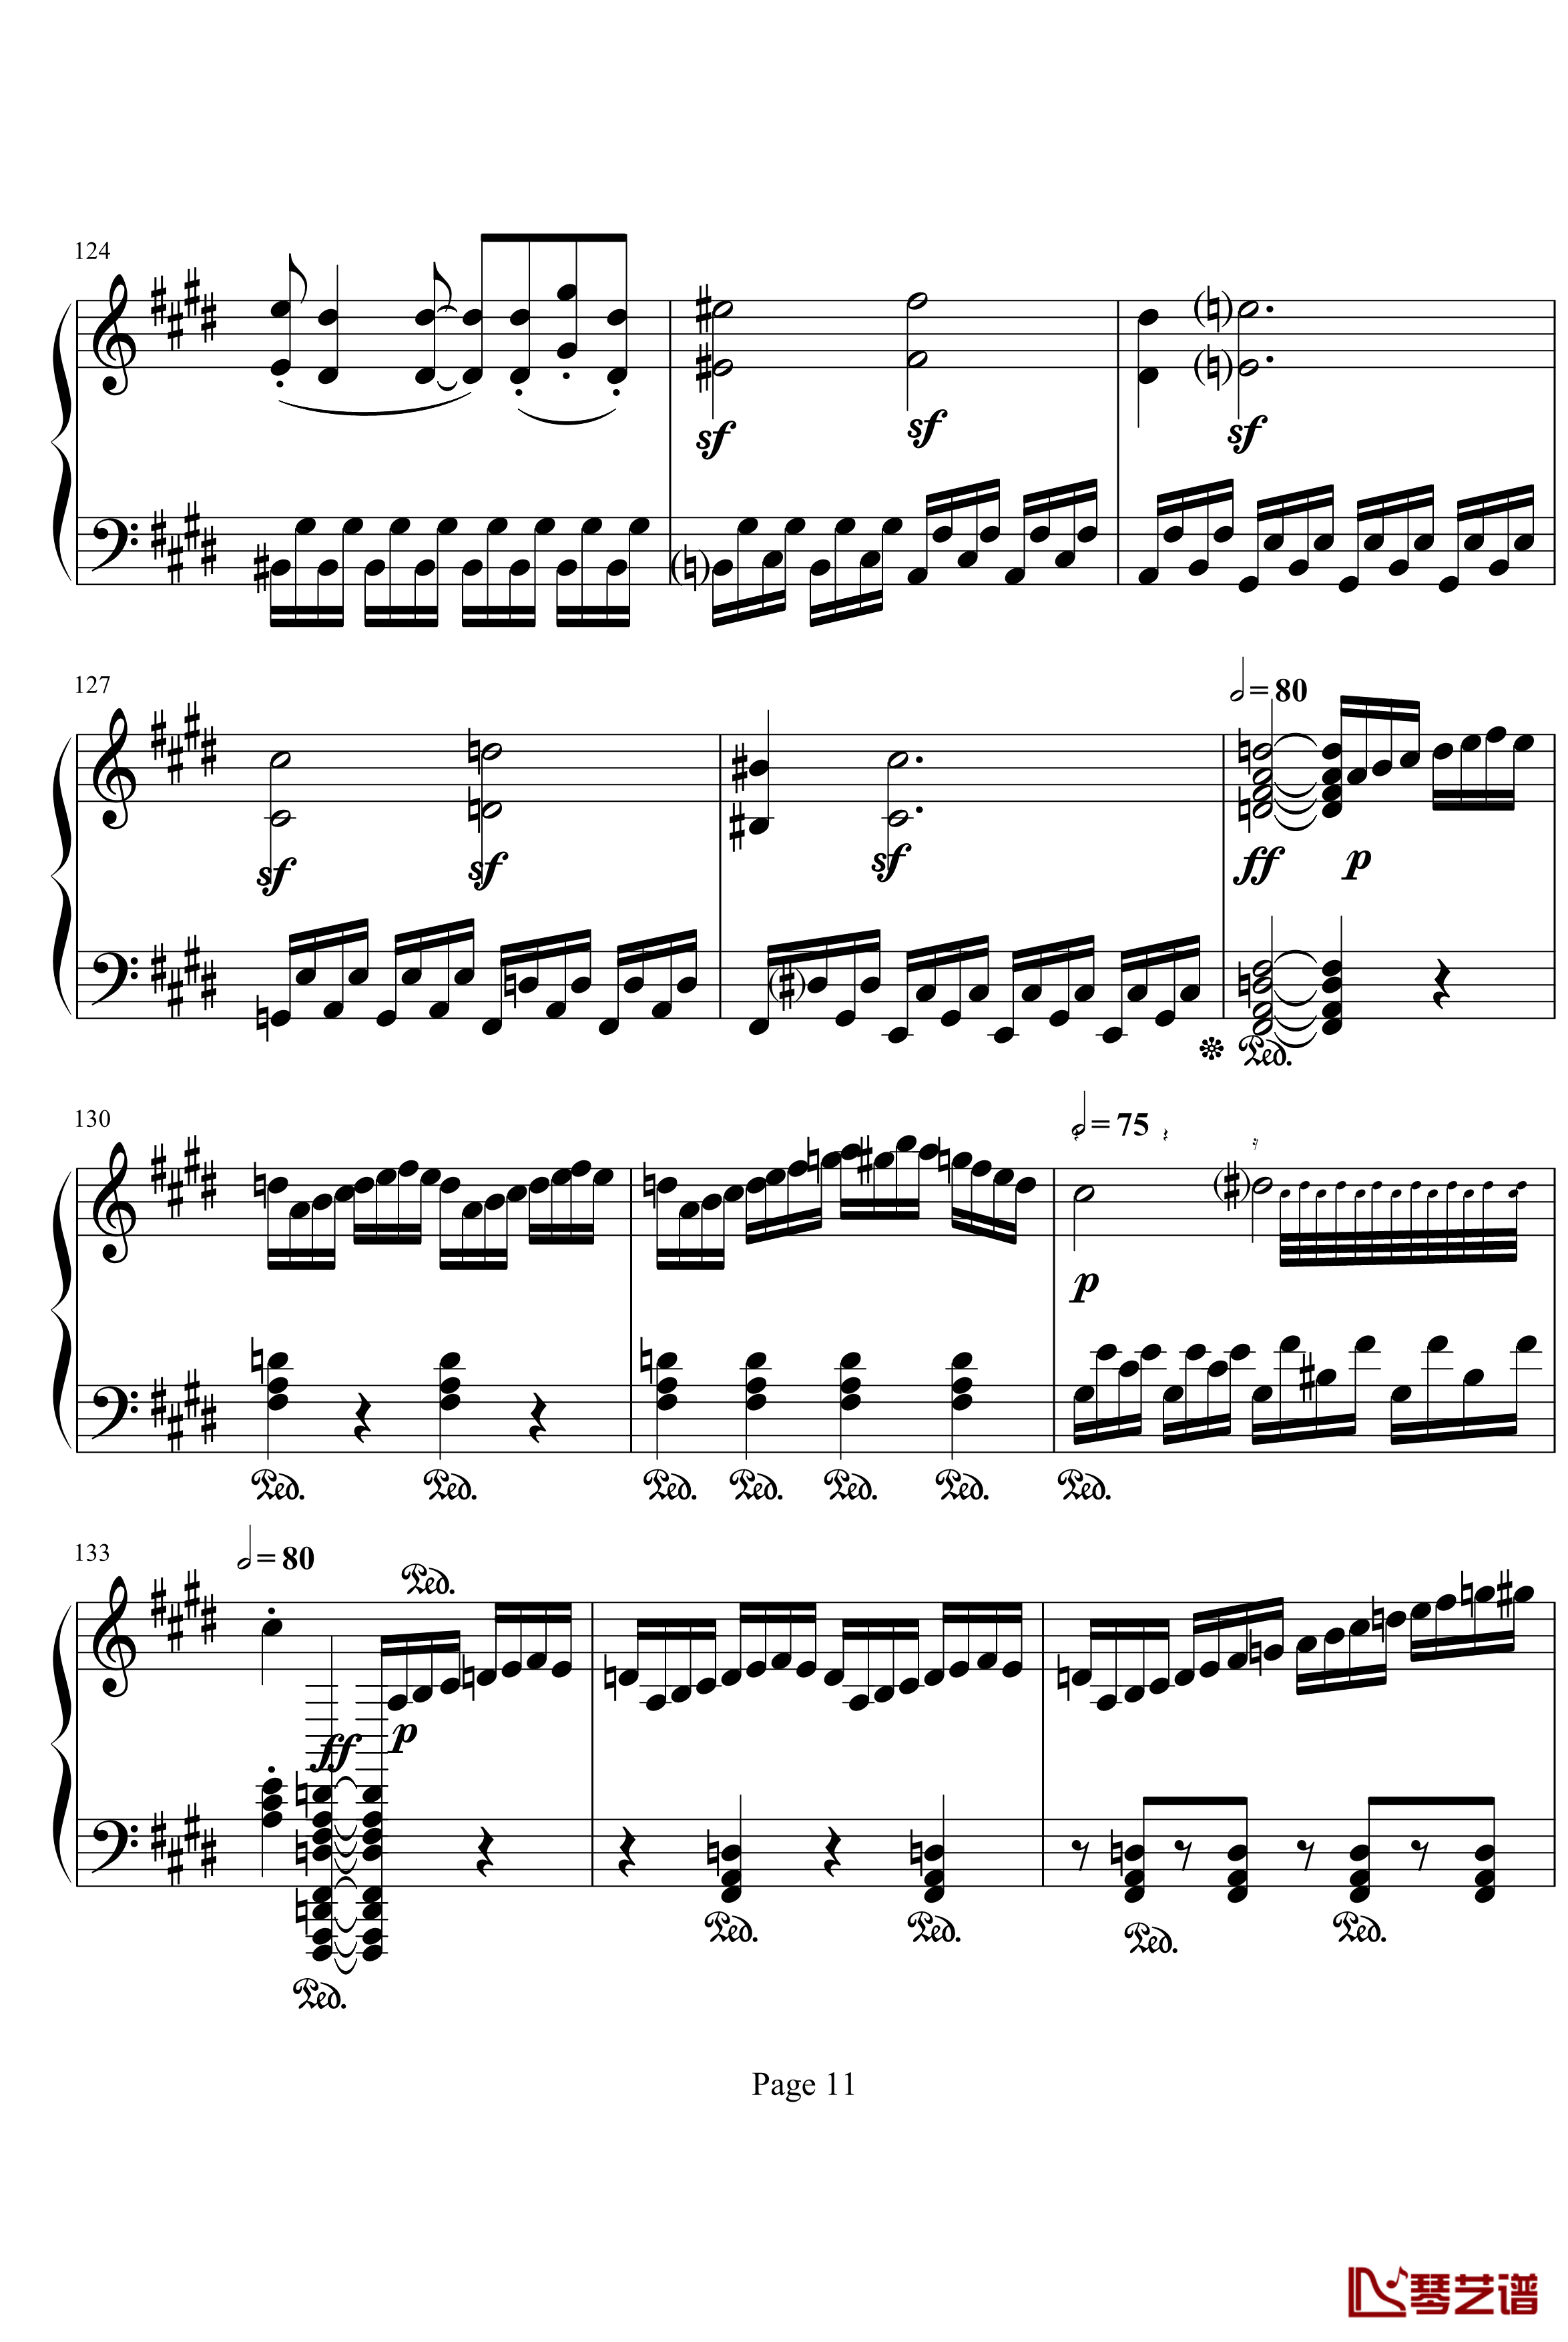 月光奏明曲钢琴谱-作品27之2-贝多芬-beethoven11